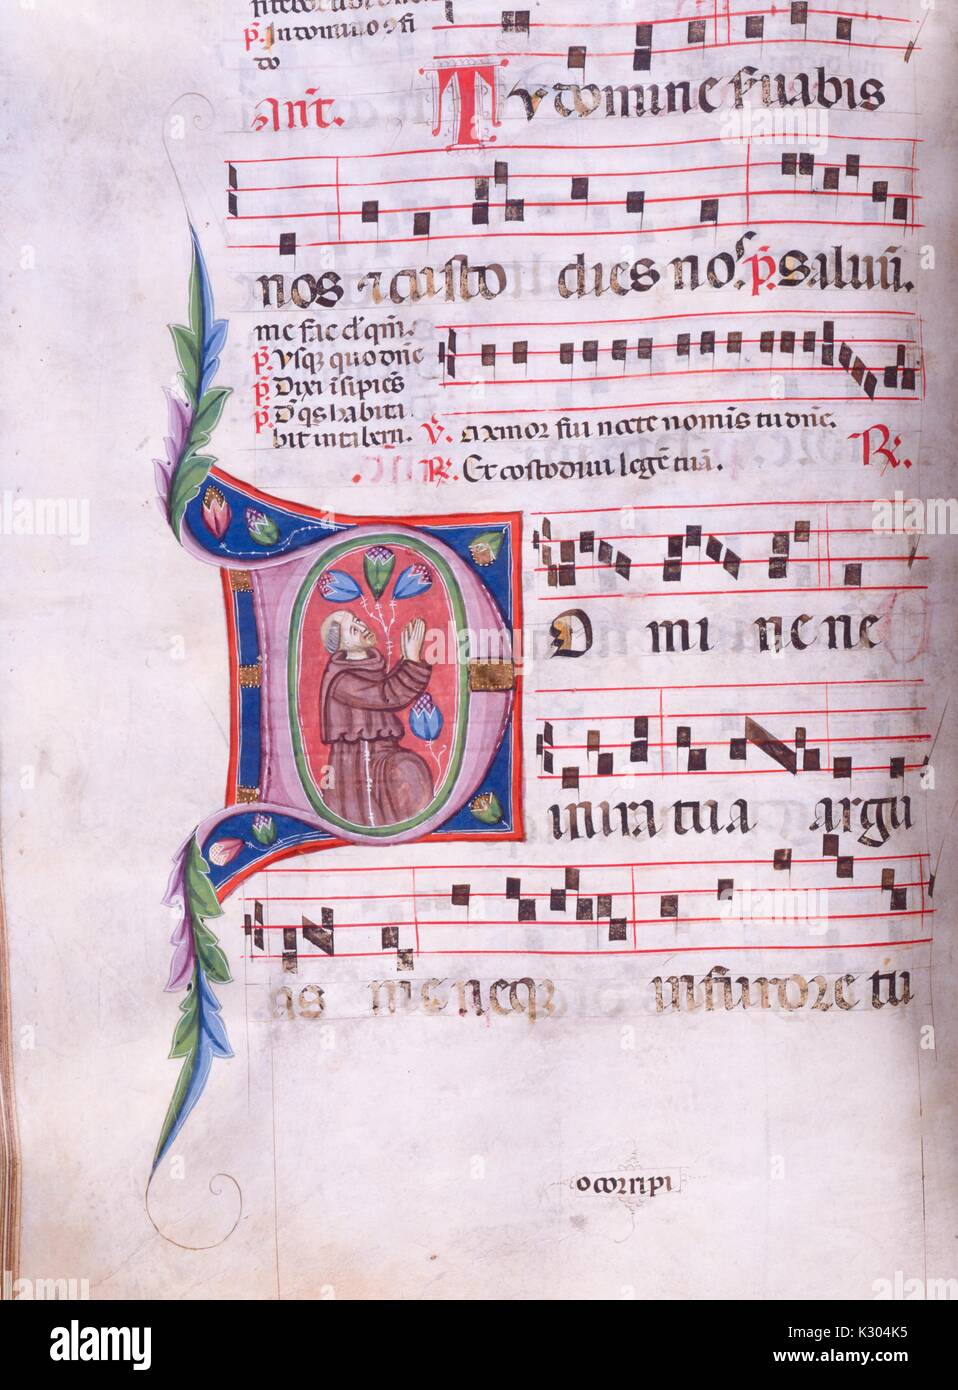 Bilderhandschrift Seite von Song mit Menschen Freude, von der "Incipit antiphonarium nocturnum", aus dem 15. Jahrhundert Latein antiphonar der Katholischen Kirche, 2013. Stockfoto